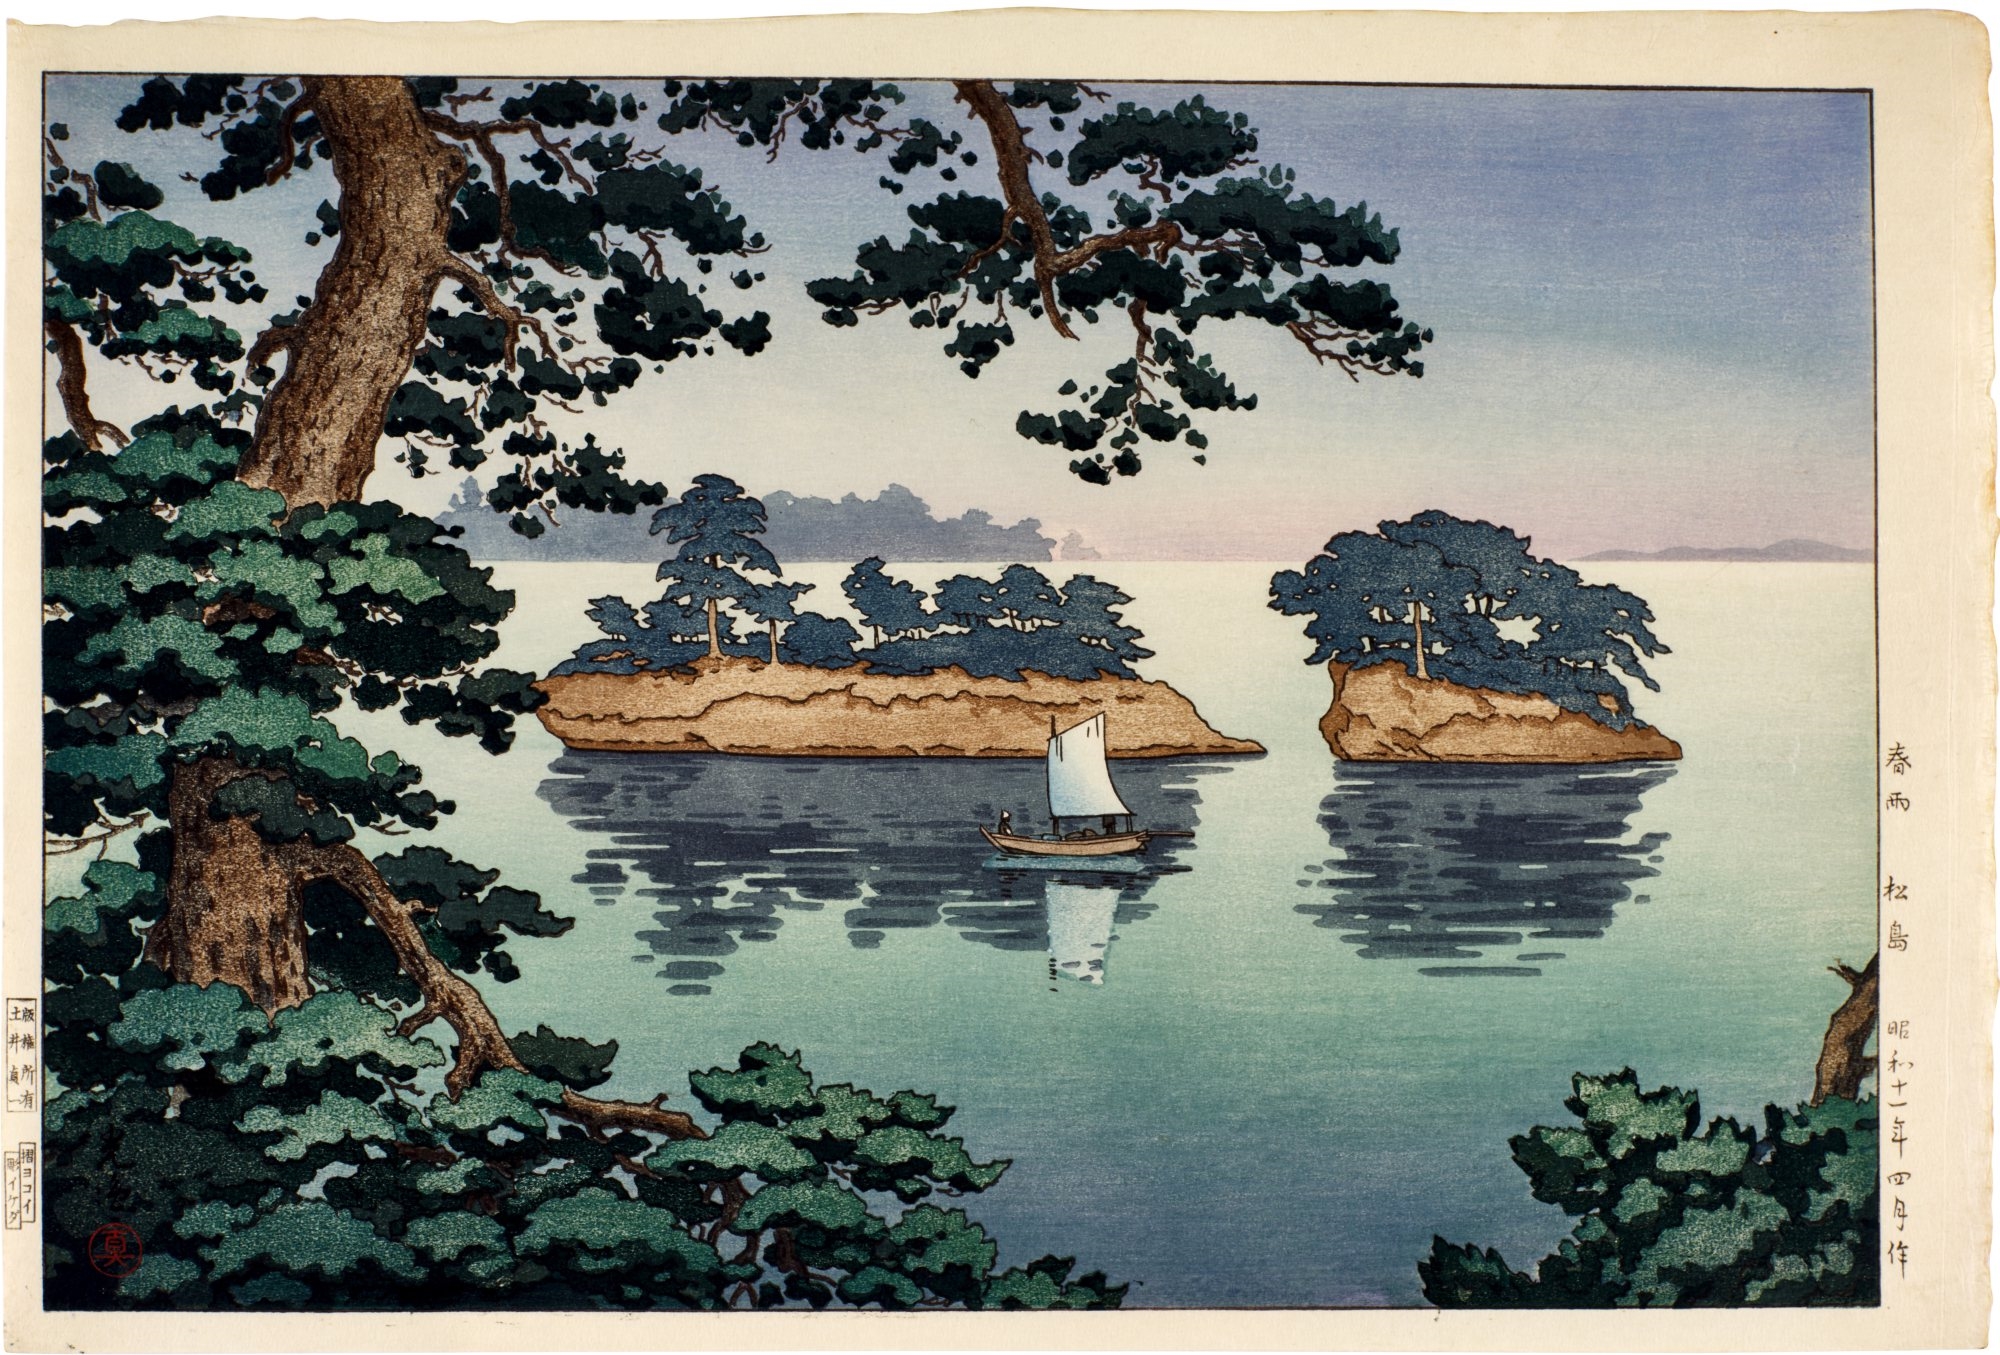 Spring Rain at Matsushima ( Harusame Matsushima ) by Tsuchiya Koitsu, April 1936